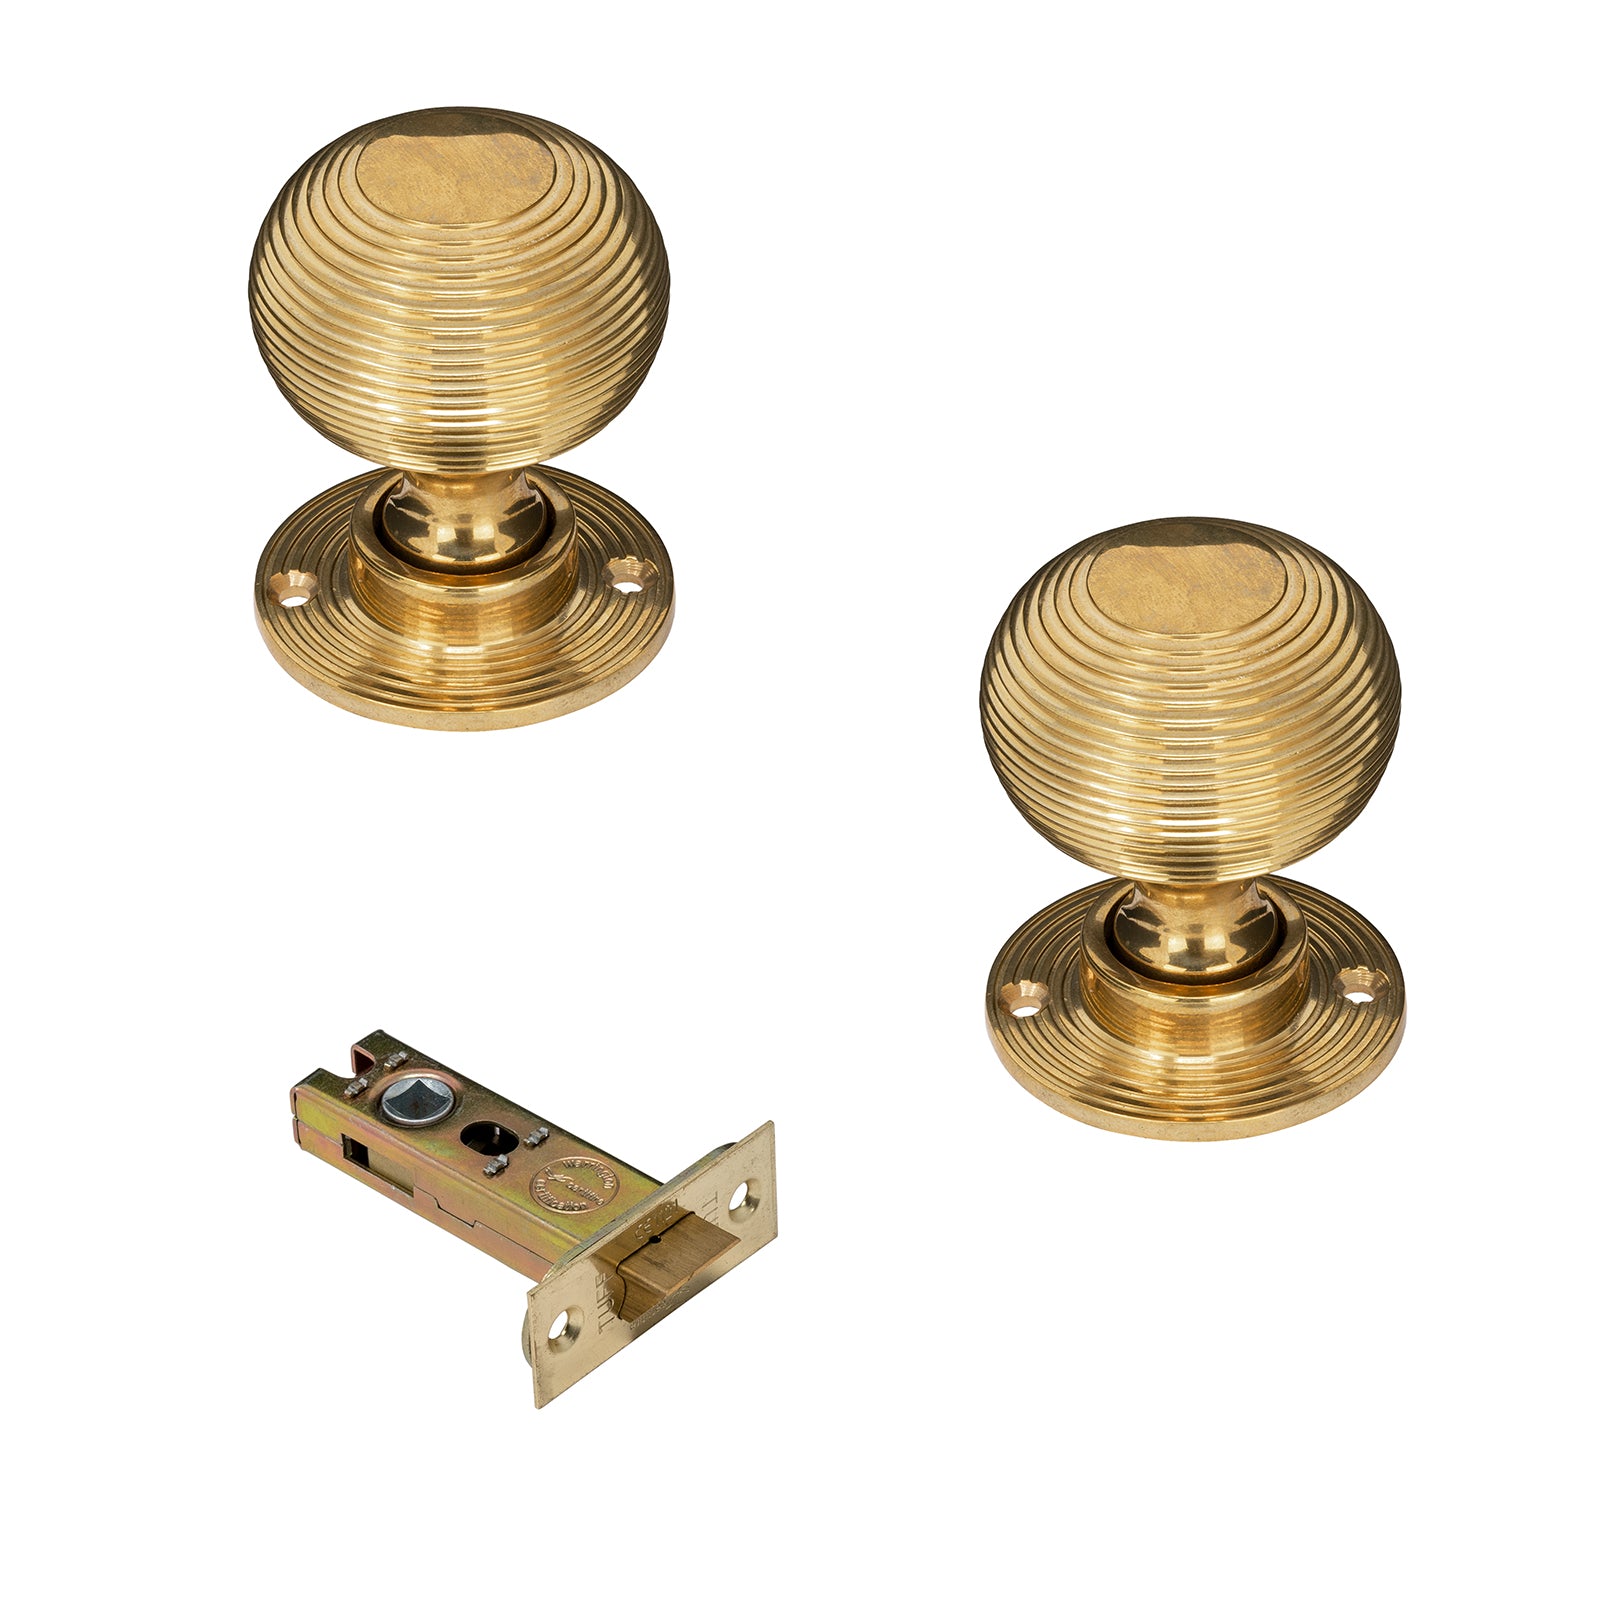 Brass beehive door knob 3 inch latch set